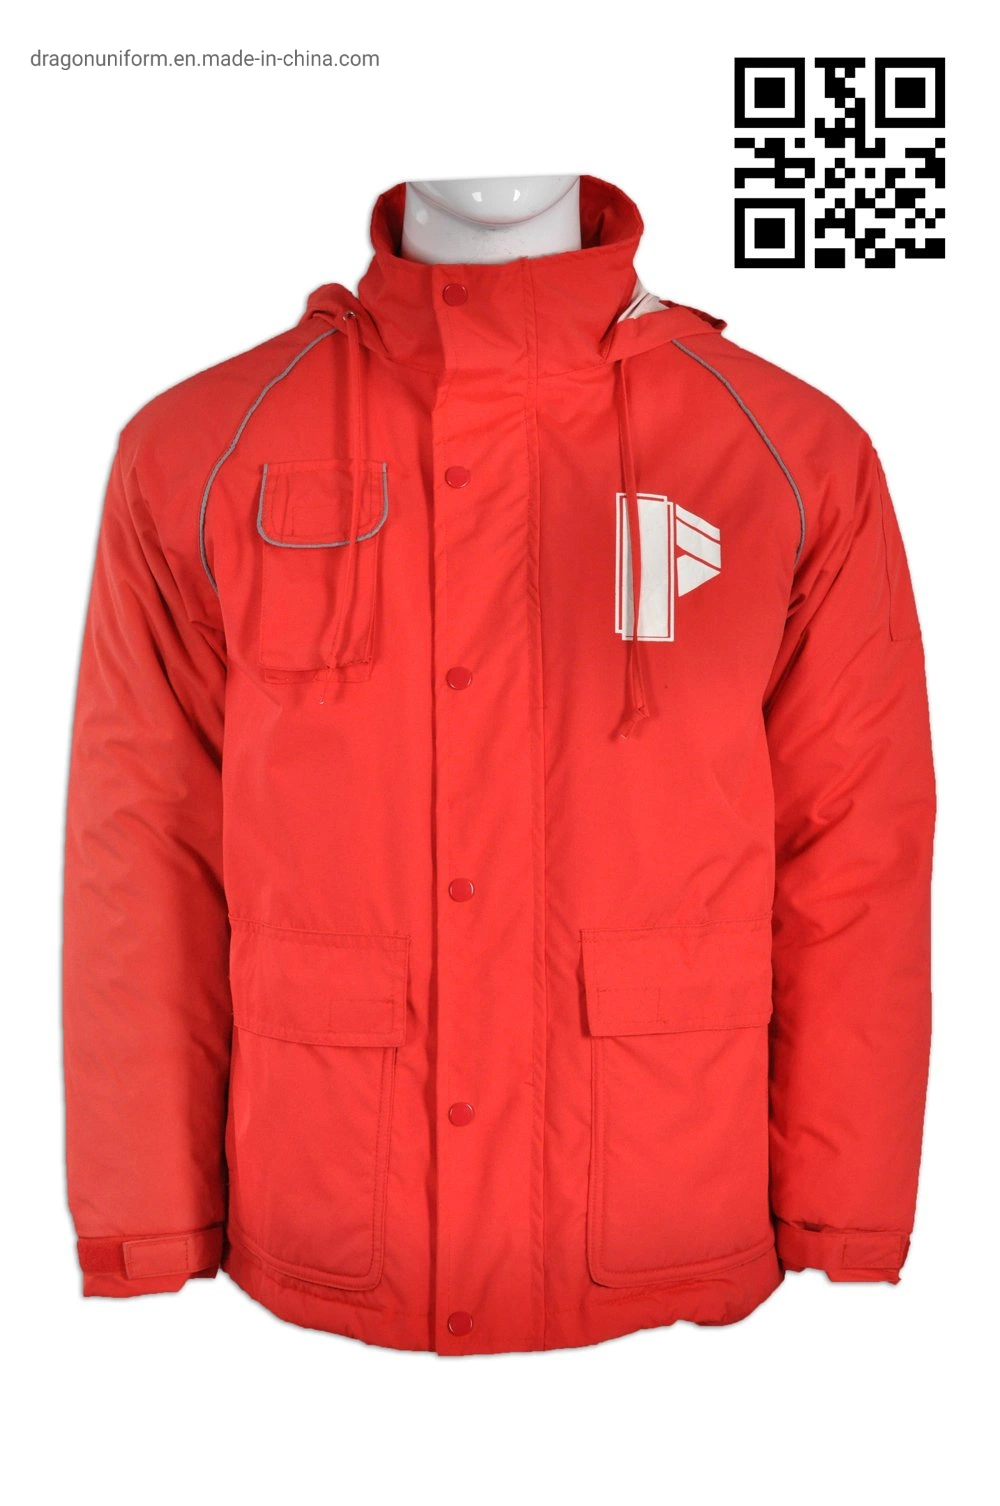 Wholesale Men's Jackets Cold 30000 G/M2/24hr Winter Windbreaker Waterproof Jackets Red Outwear Ski Snow Wear